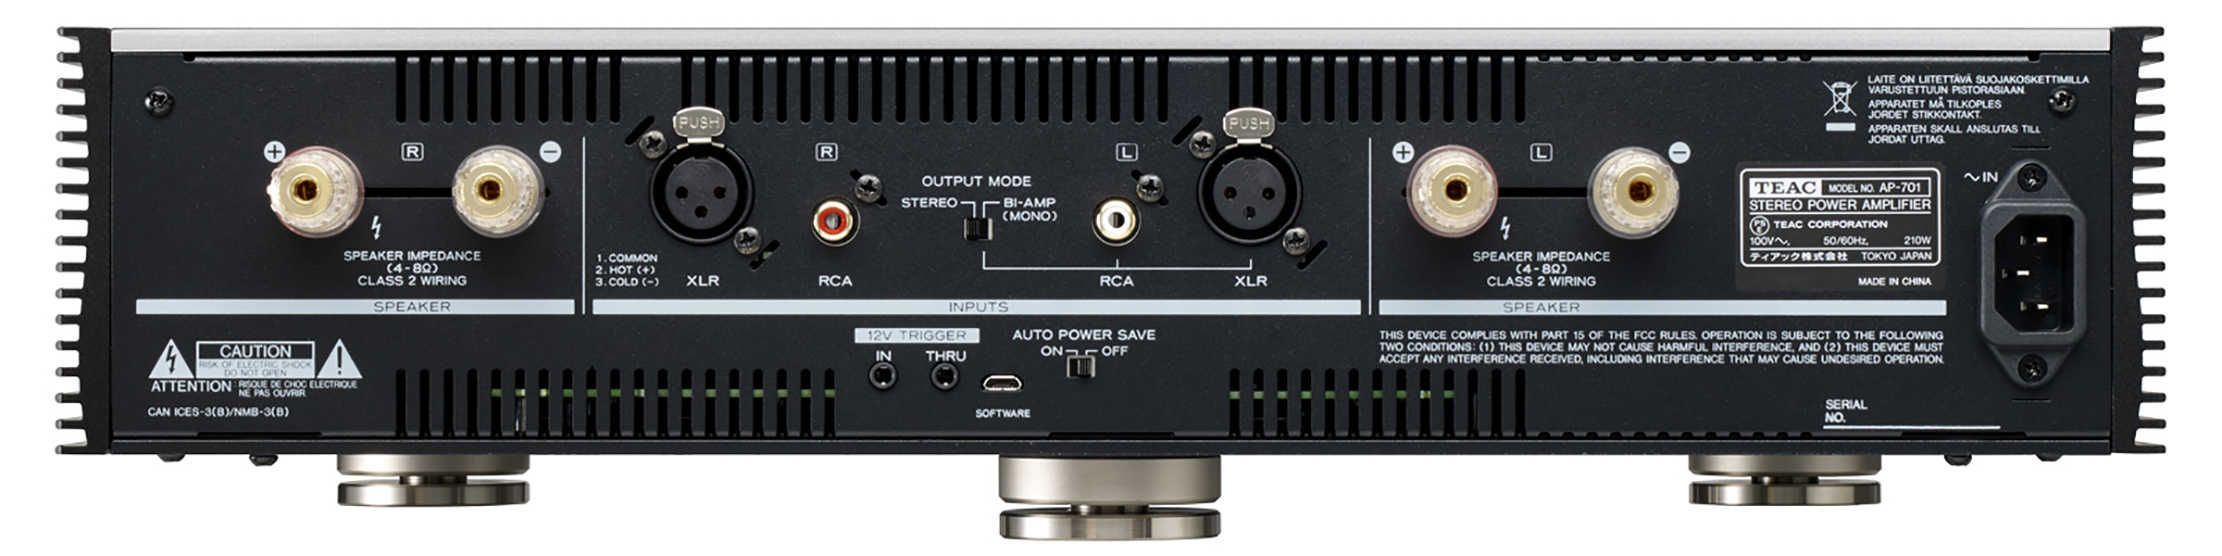 TEAC AP-701 銀色 立體聲 大功率 後級 放大器 | 金曲音響